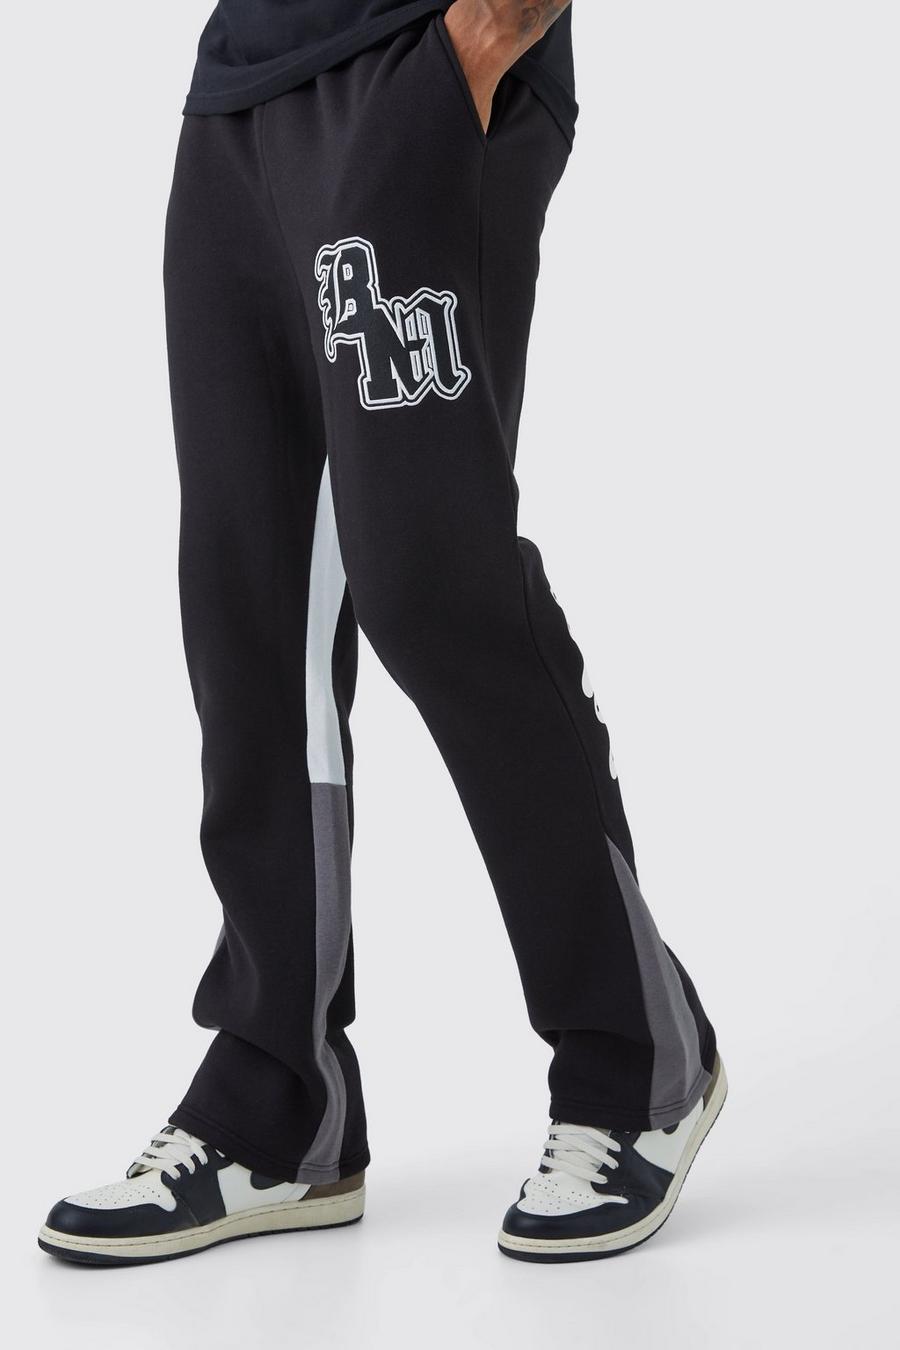 Pantalón deportivo Tall con BM en contraste y refuerzo, Black